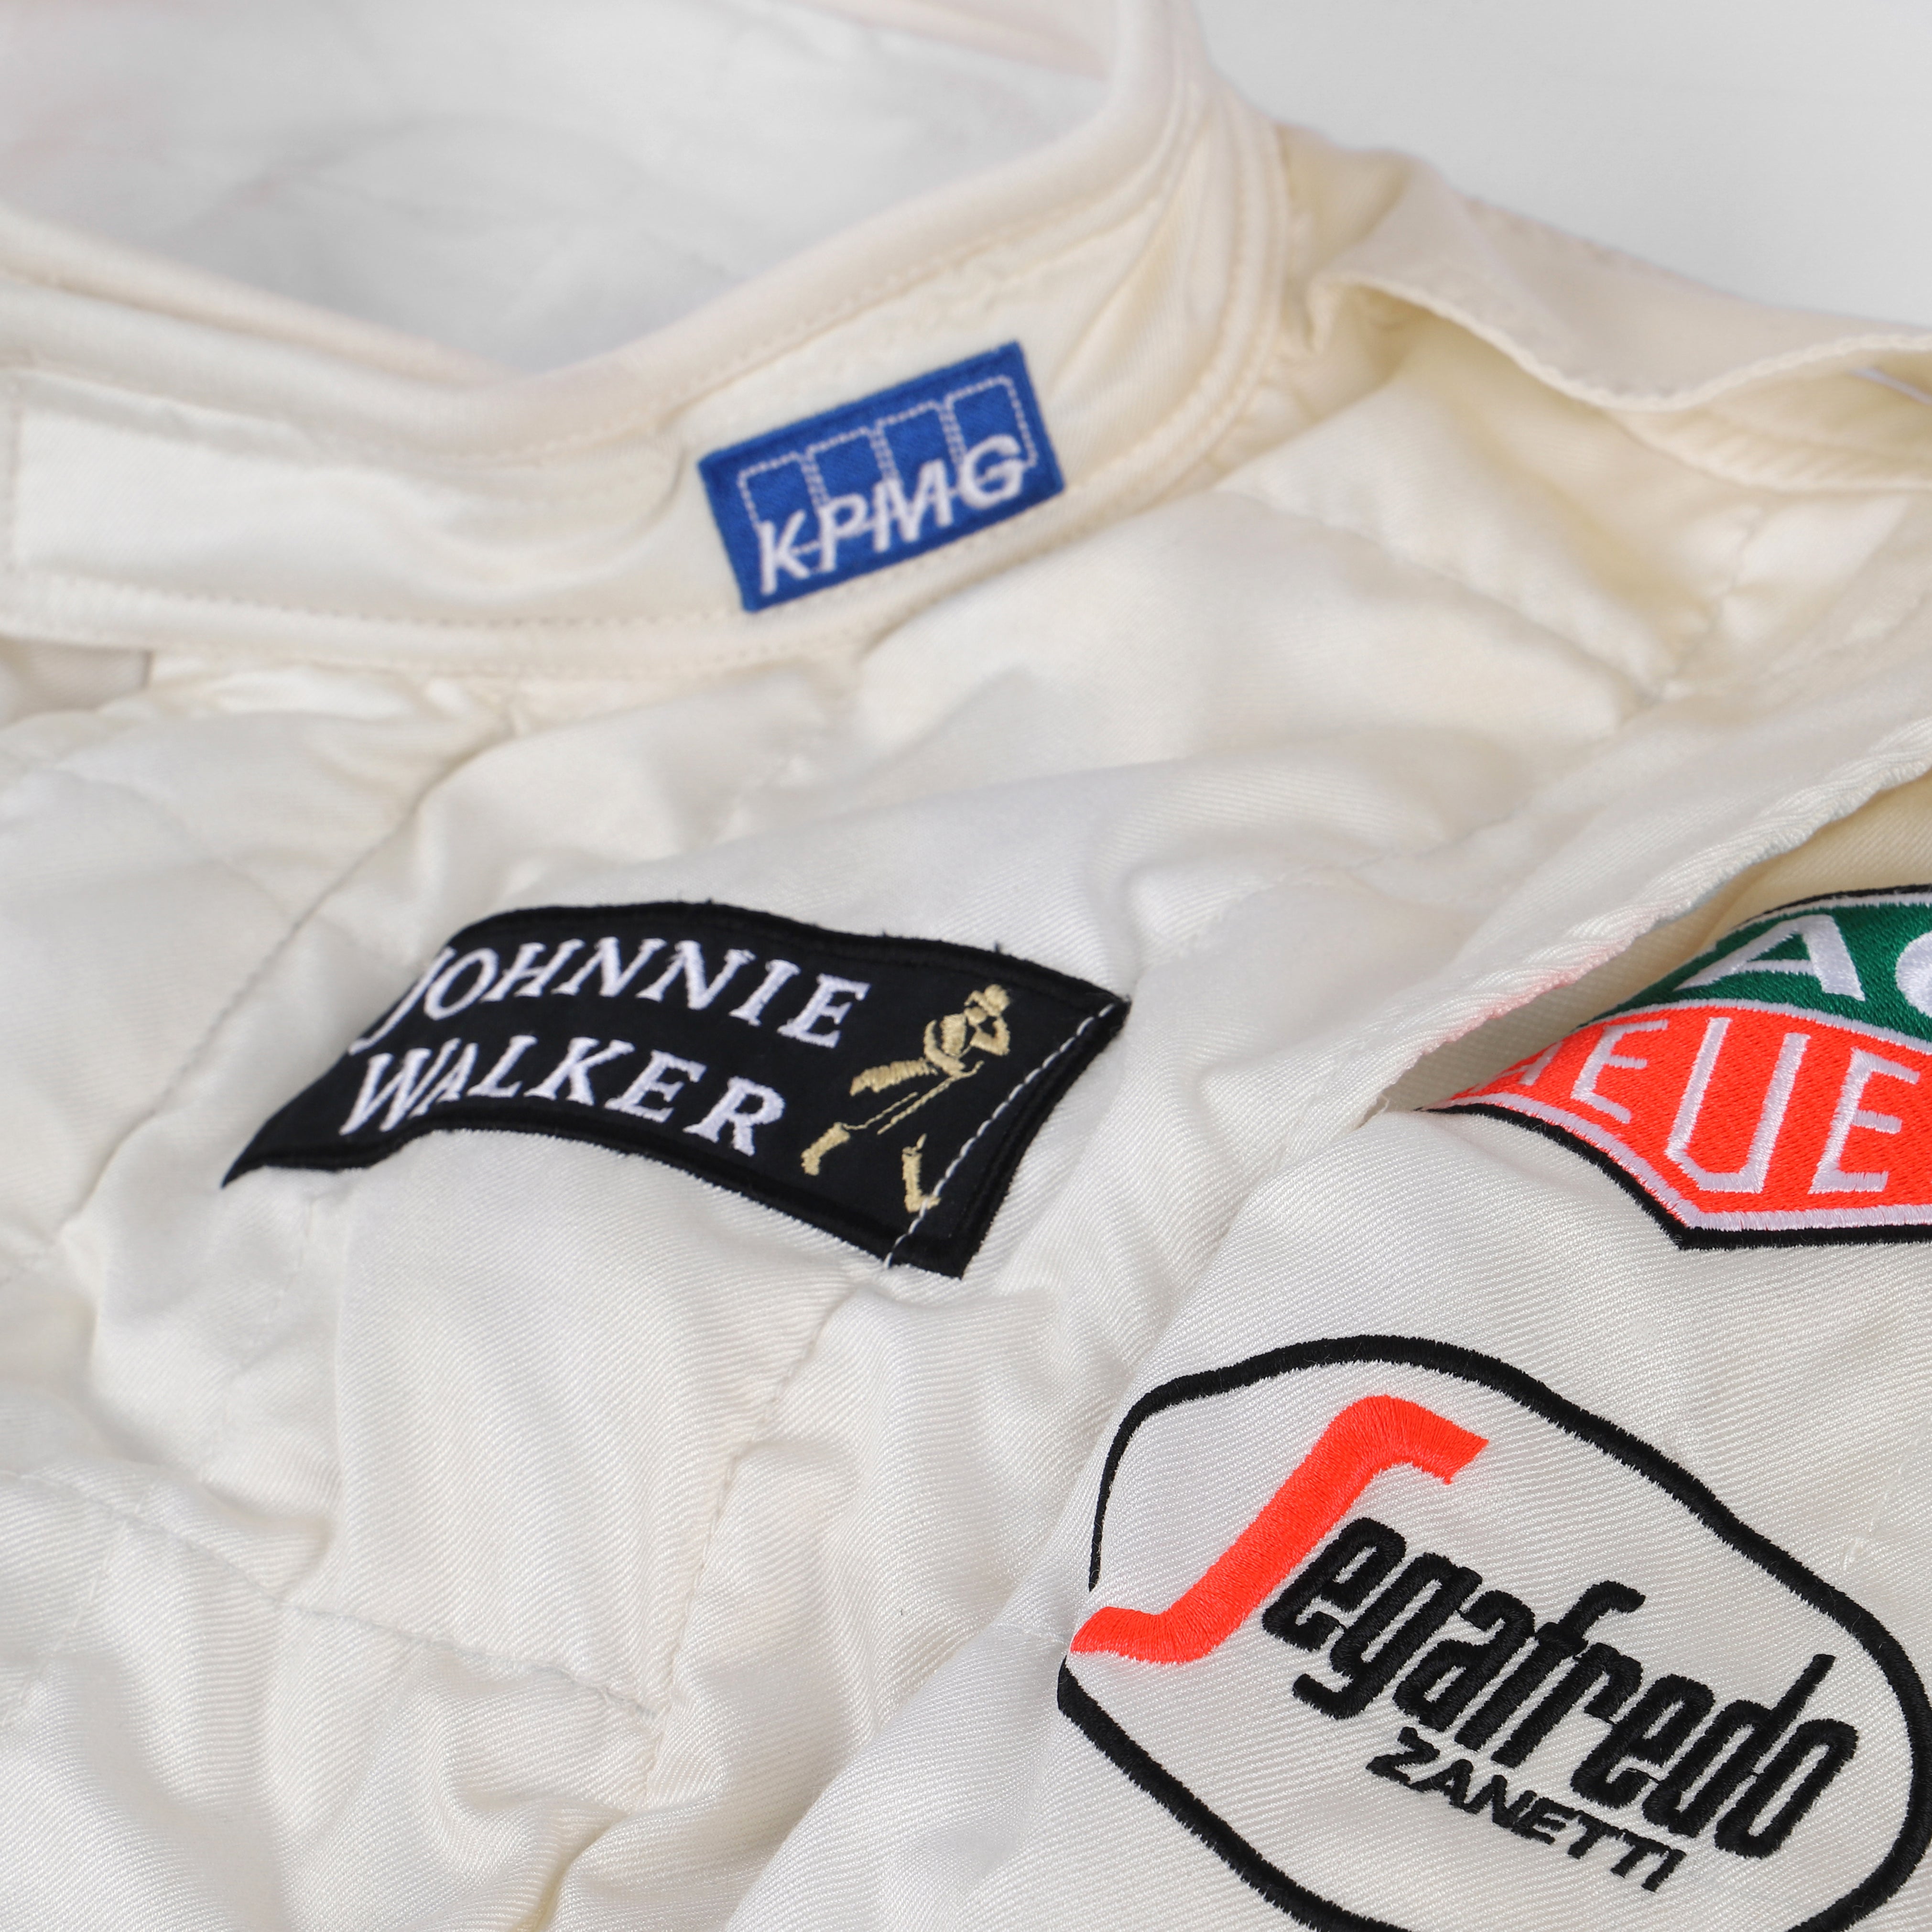 Jenson Button 2015 Replica McLaren F1 Team Race Suit